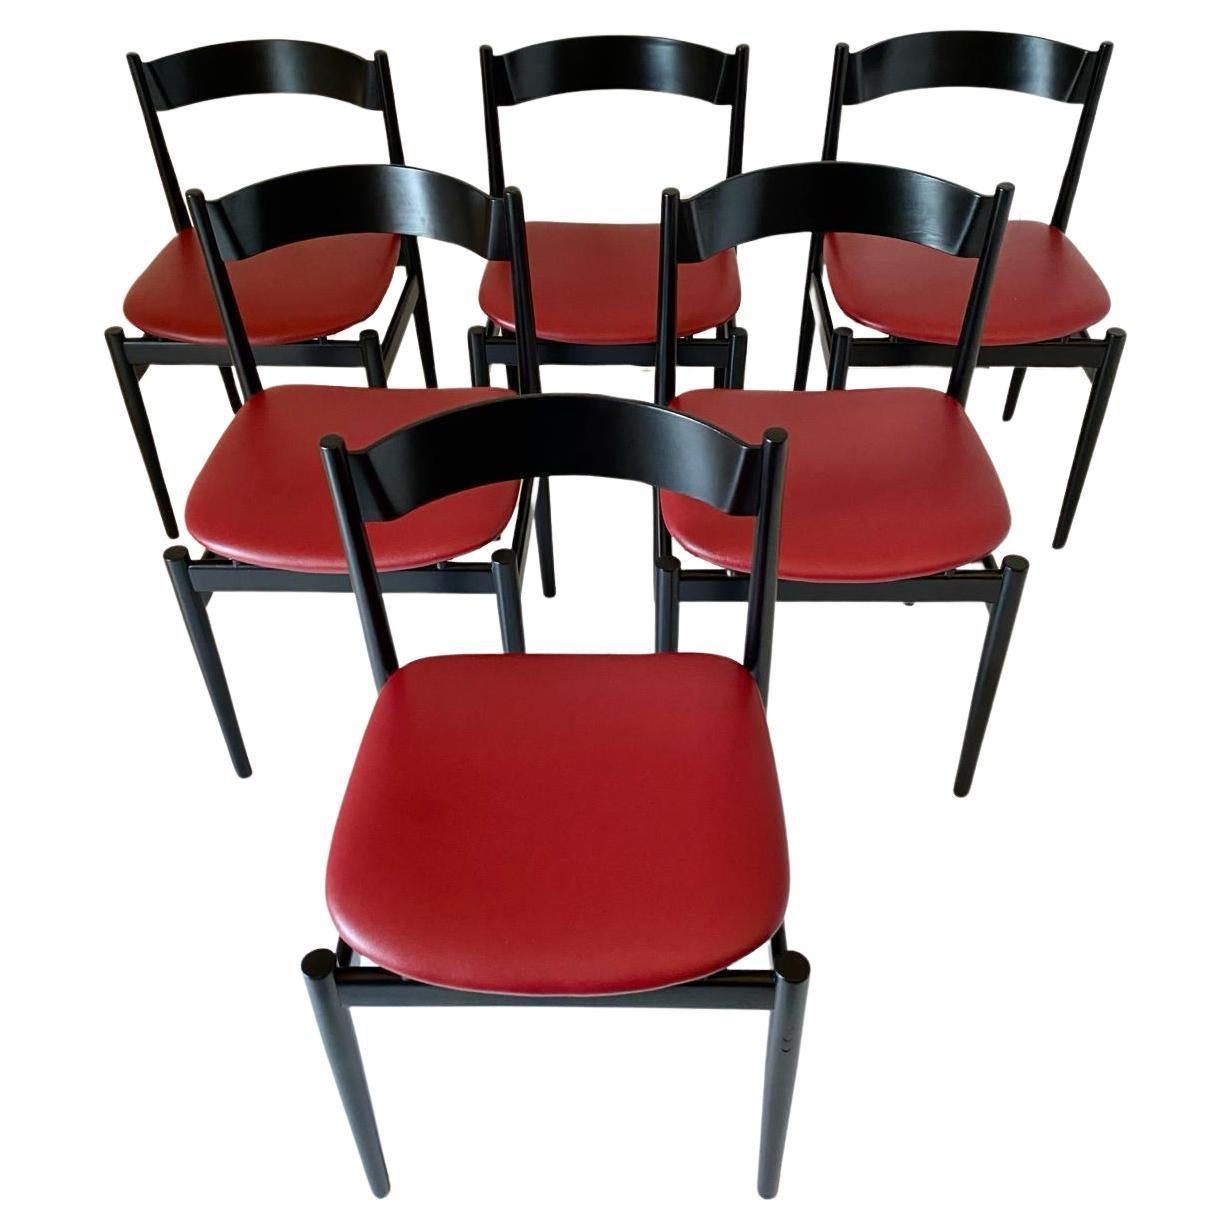 Italienische Moderne Esszimmerstühle Satz von sechs Gianfranco Frattini für Figli di Amedeo Cassina - Italien 1960 's

Set aus sechs schwarz gefärbten Nussbaumstühlen mit roten Kunstledersitzen, Modell 107, entworfen von Gianfranco Frattini für